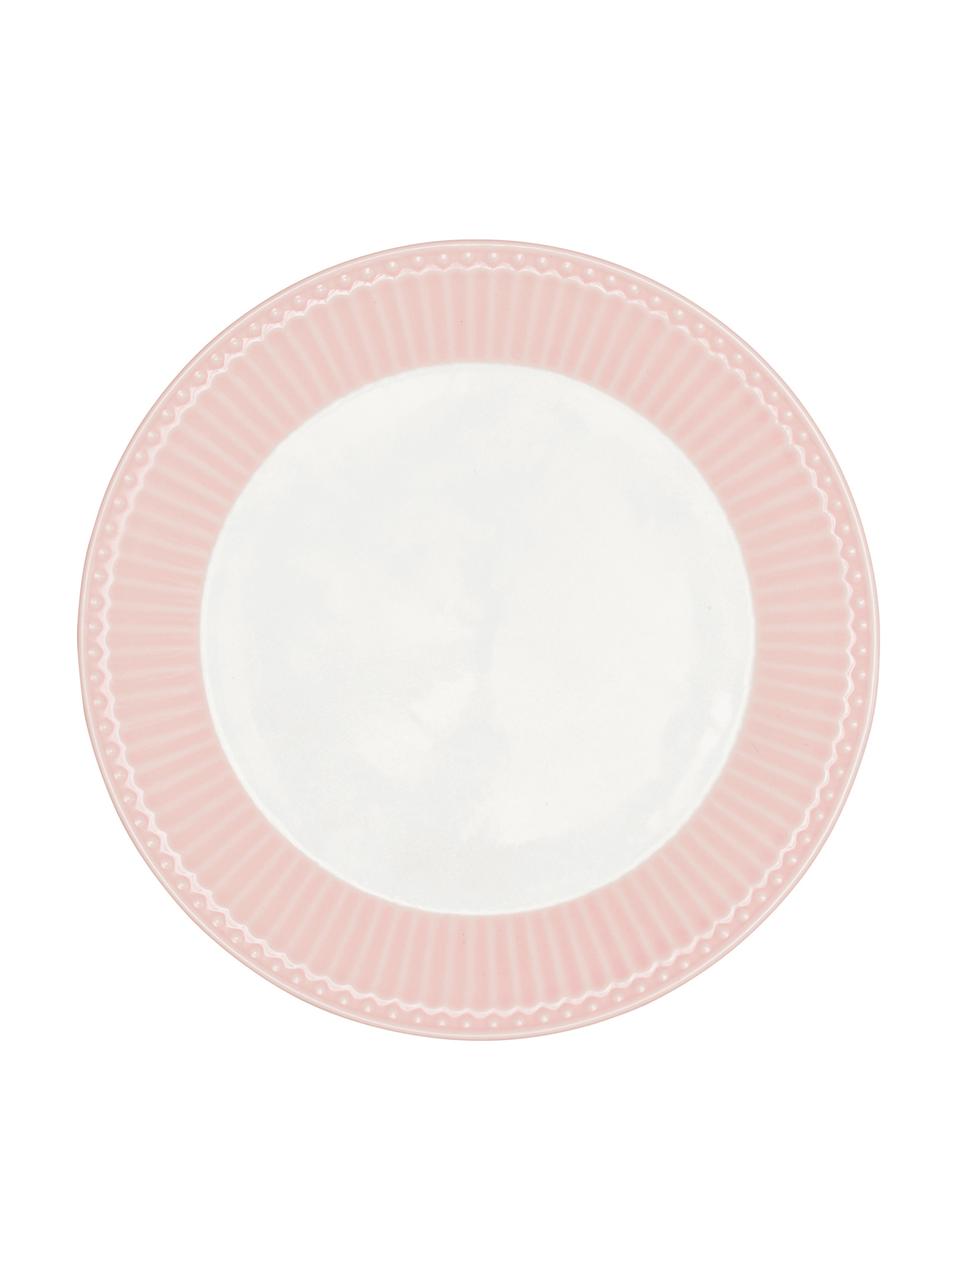 Piattino da dessert rosa fatto a mano Alice 2 pz, Gres, Rosa, bianco, Ø 23 cm